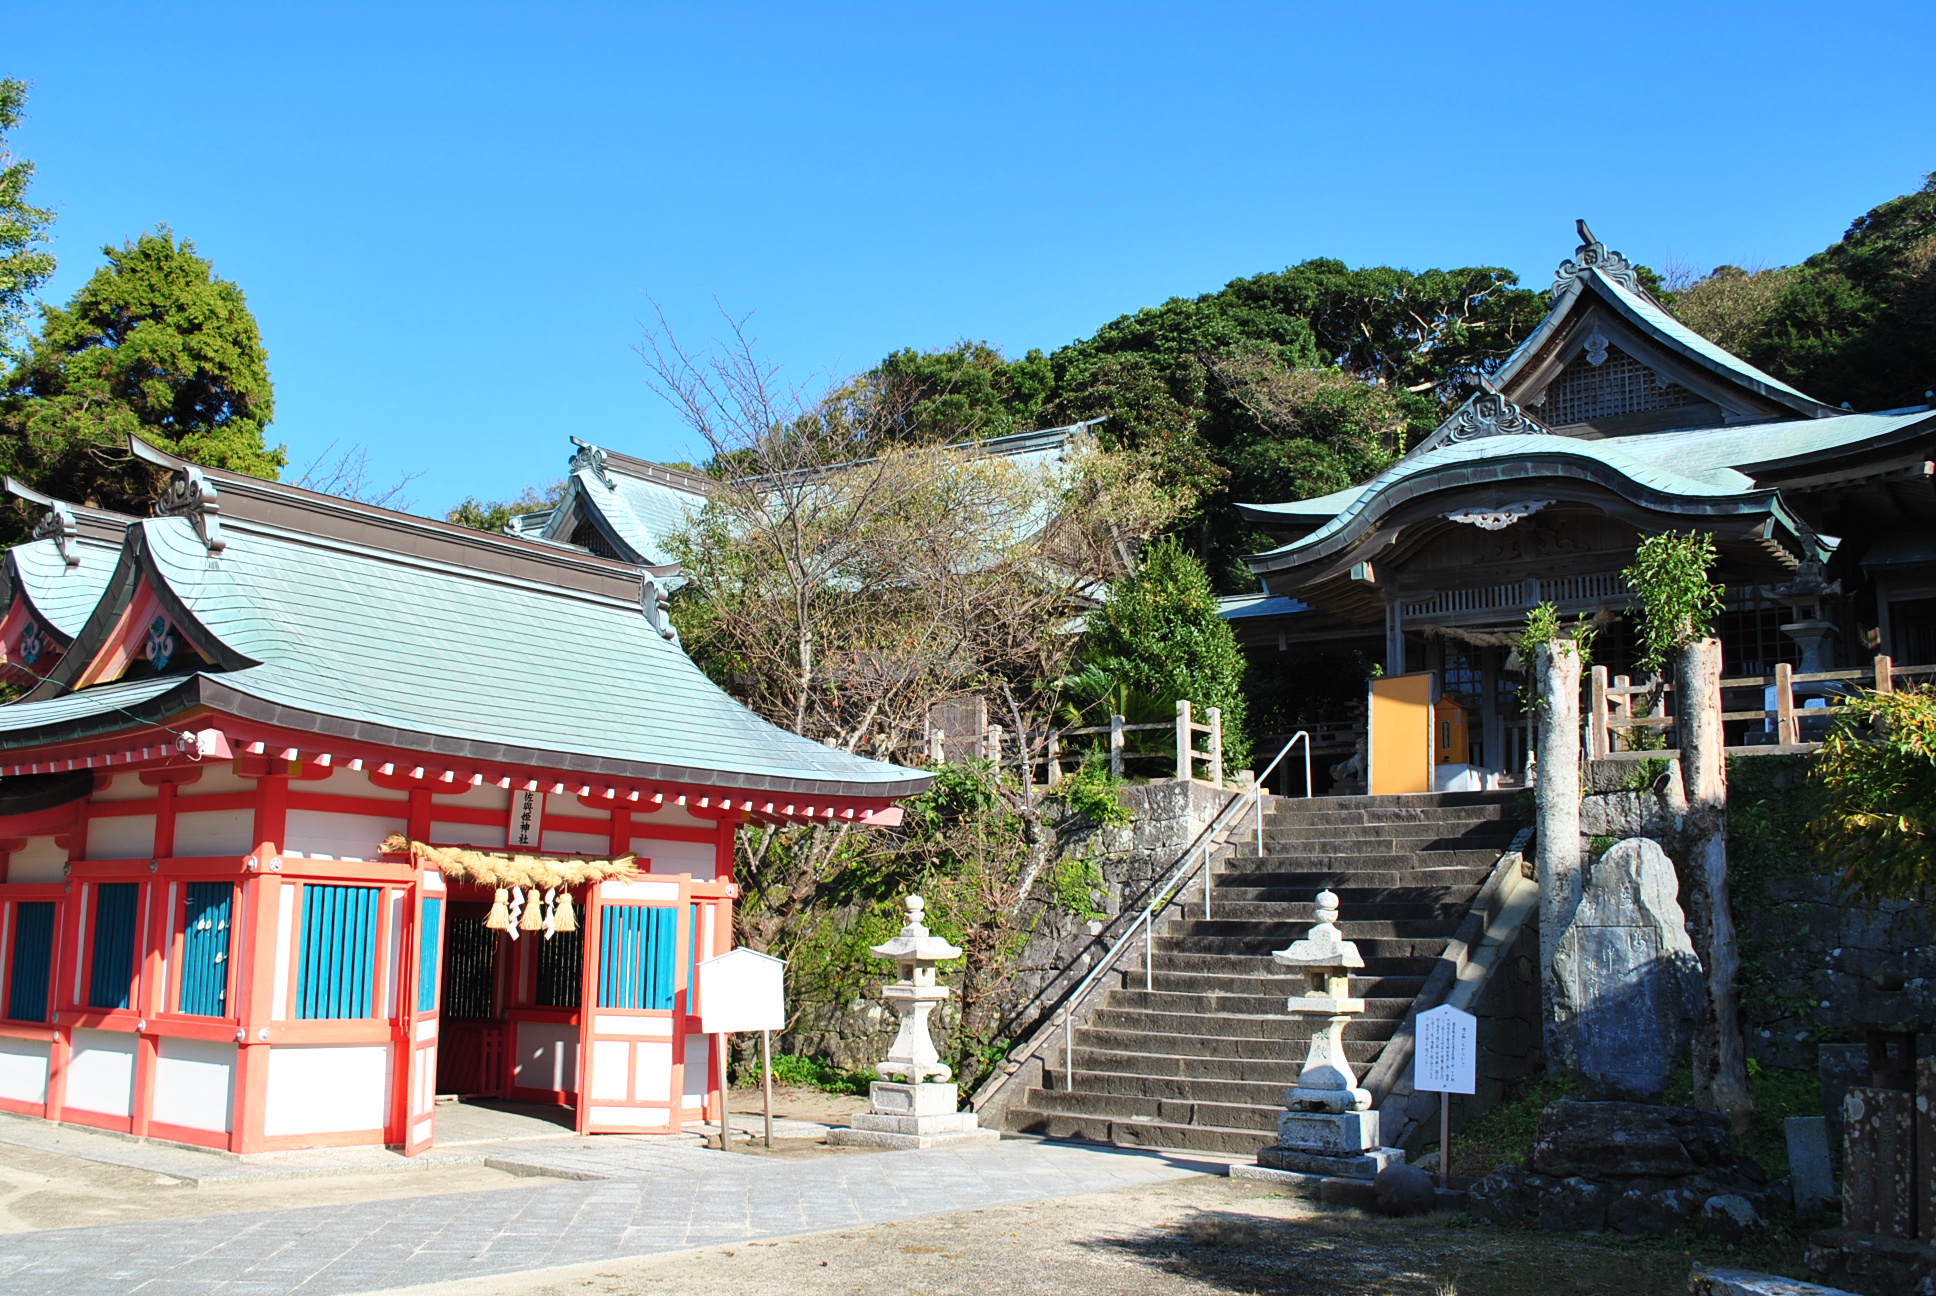 唐津市呼子加部島に鎮座する、航海安全の田島神社と縁結びのパワースポット佐與姫神社。